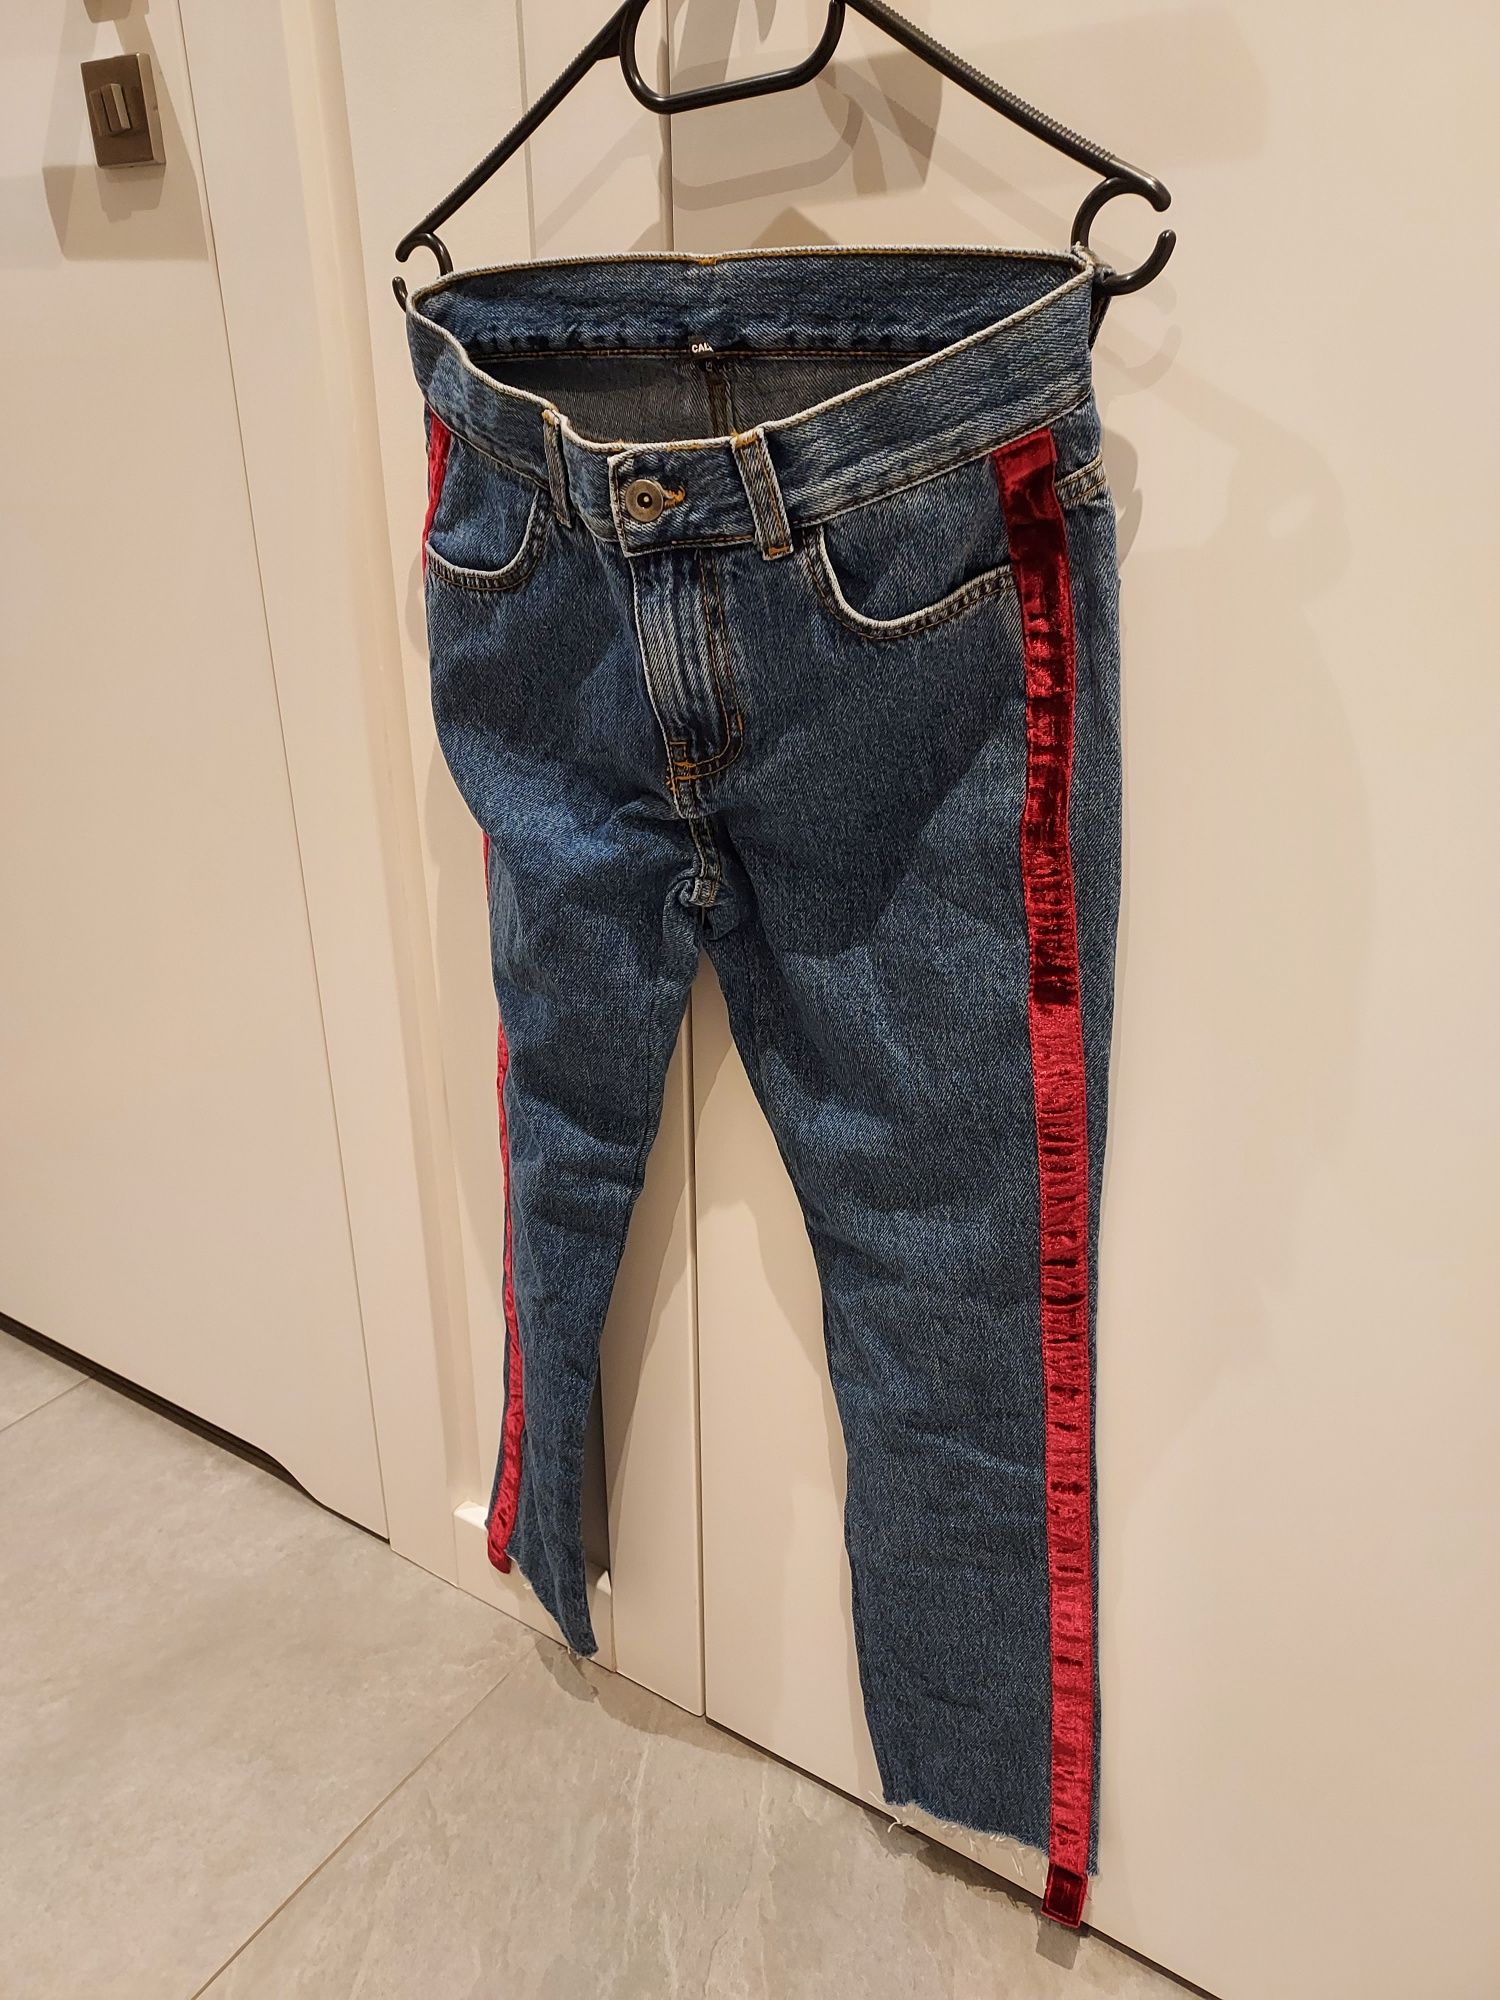 Spodnie jeans damskiej Calzedonia czerwone lampasy rozmiar XS